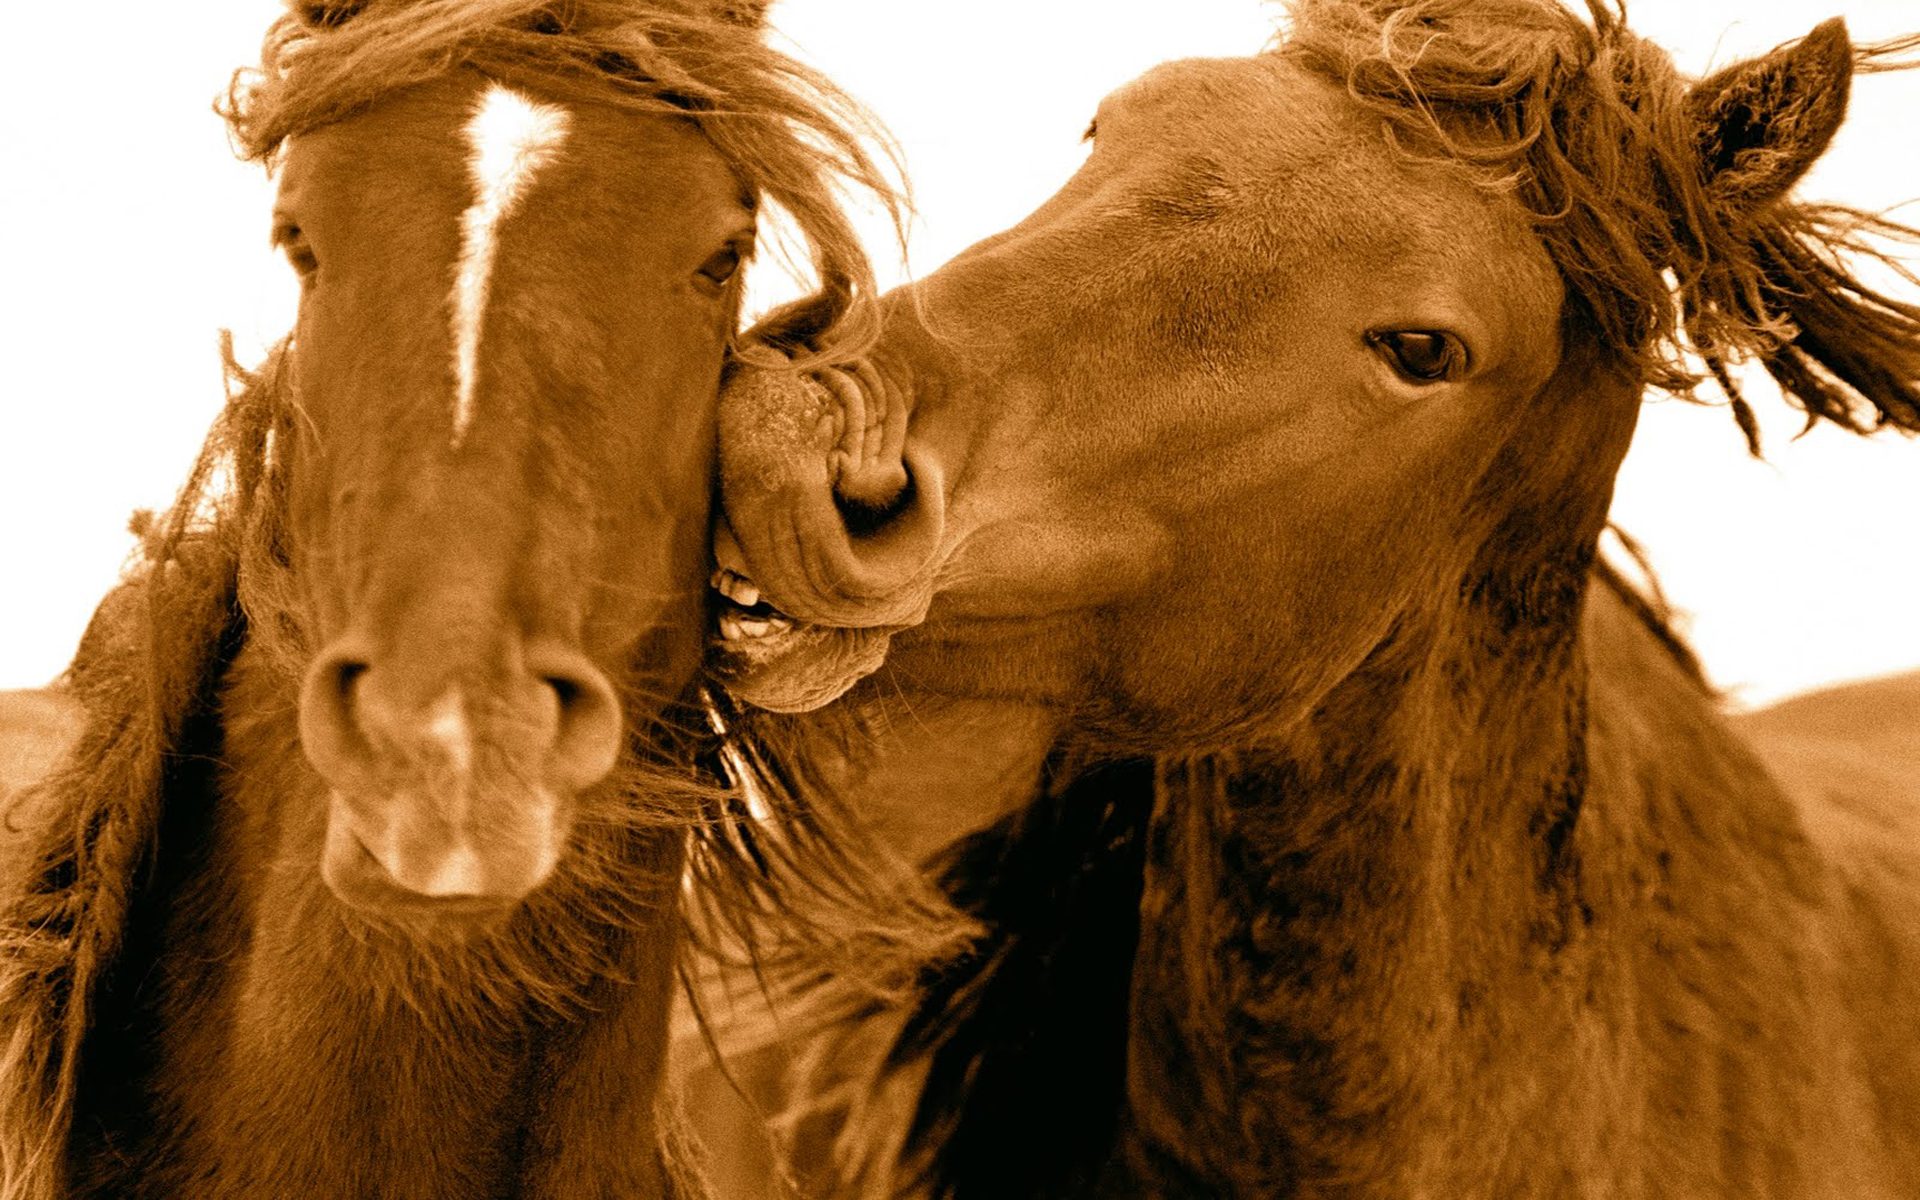 Скачать обои бесплатно Животные, Любовь, Лошадь картинка на рабочий стол ПК